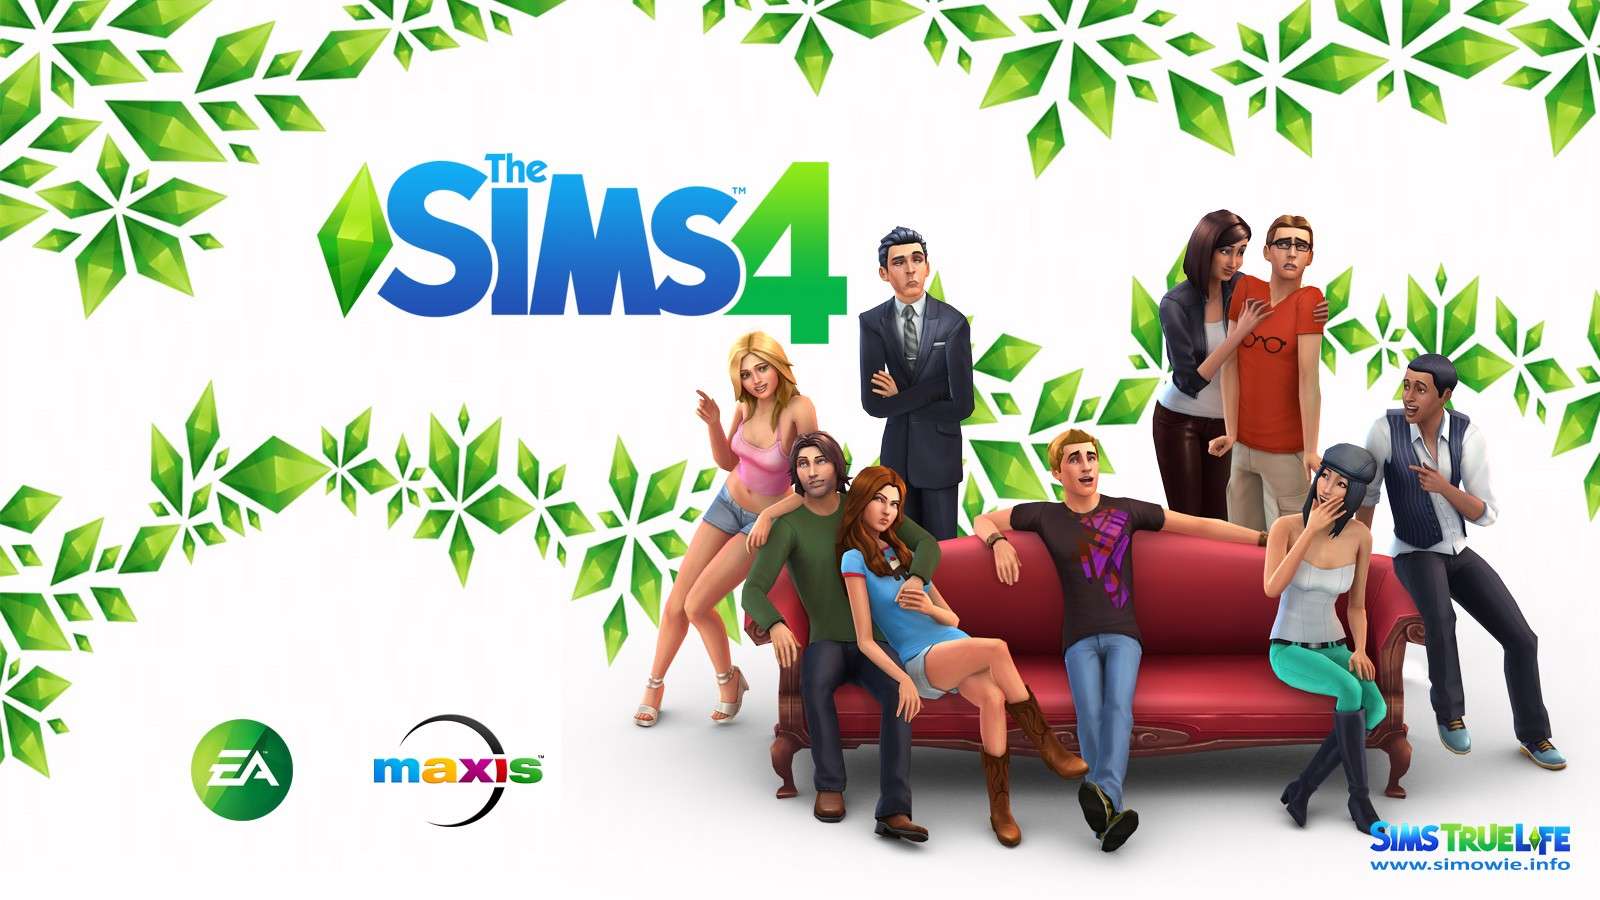 موقع simsglobe  يكشف عن أسرار وأكواد الغش في لعبه The Sims 4 لمن لايحبون التعب في اللعبه  The-si10